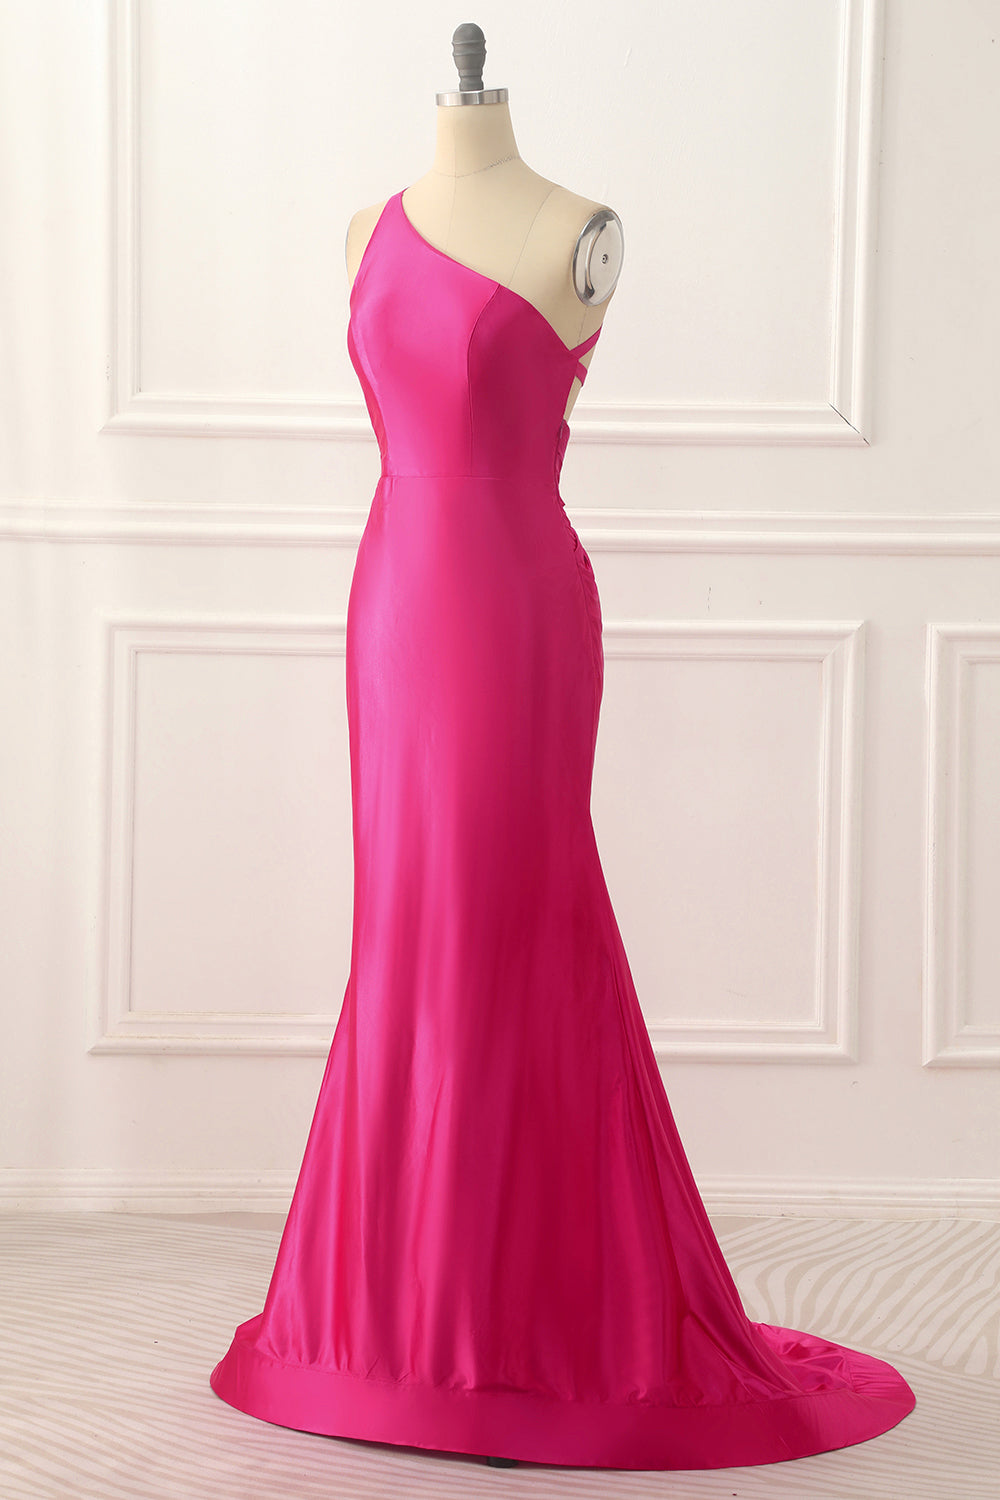 Party Dress Websites, One Shoulder Hot Pink Satin Backless Long Prom Dress